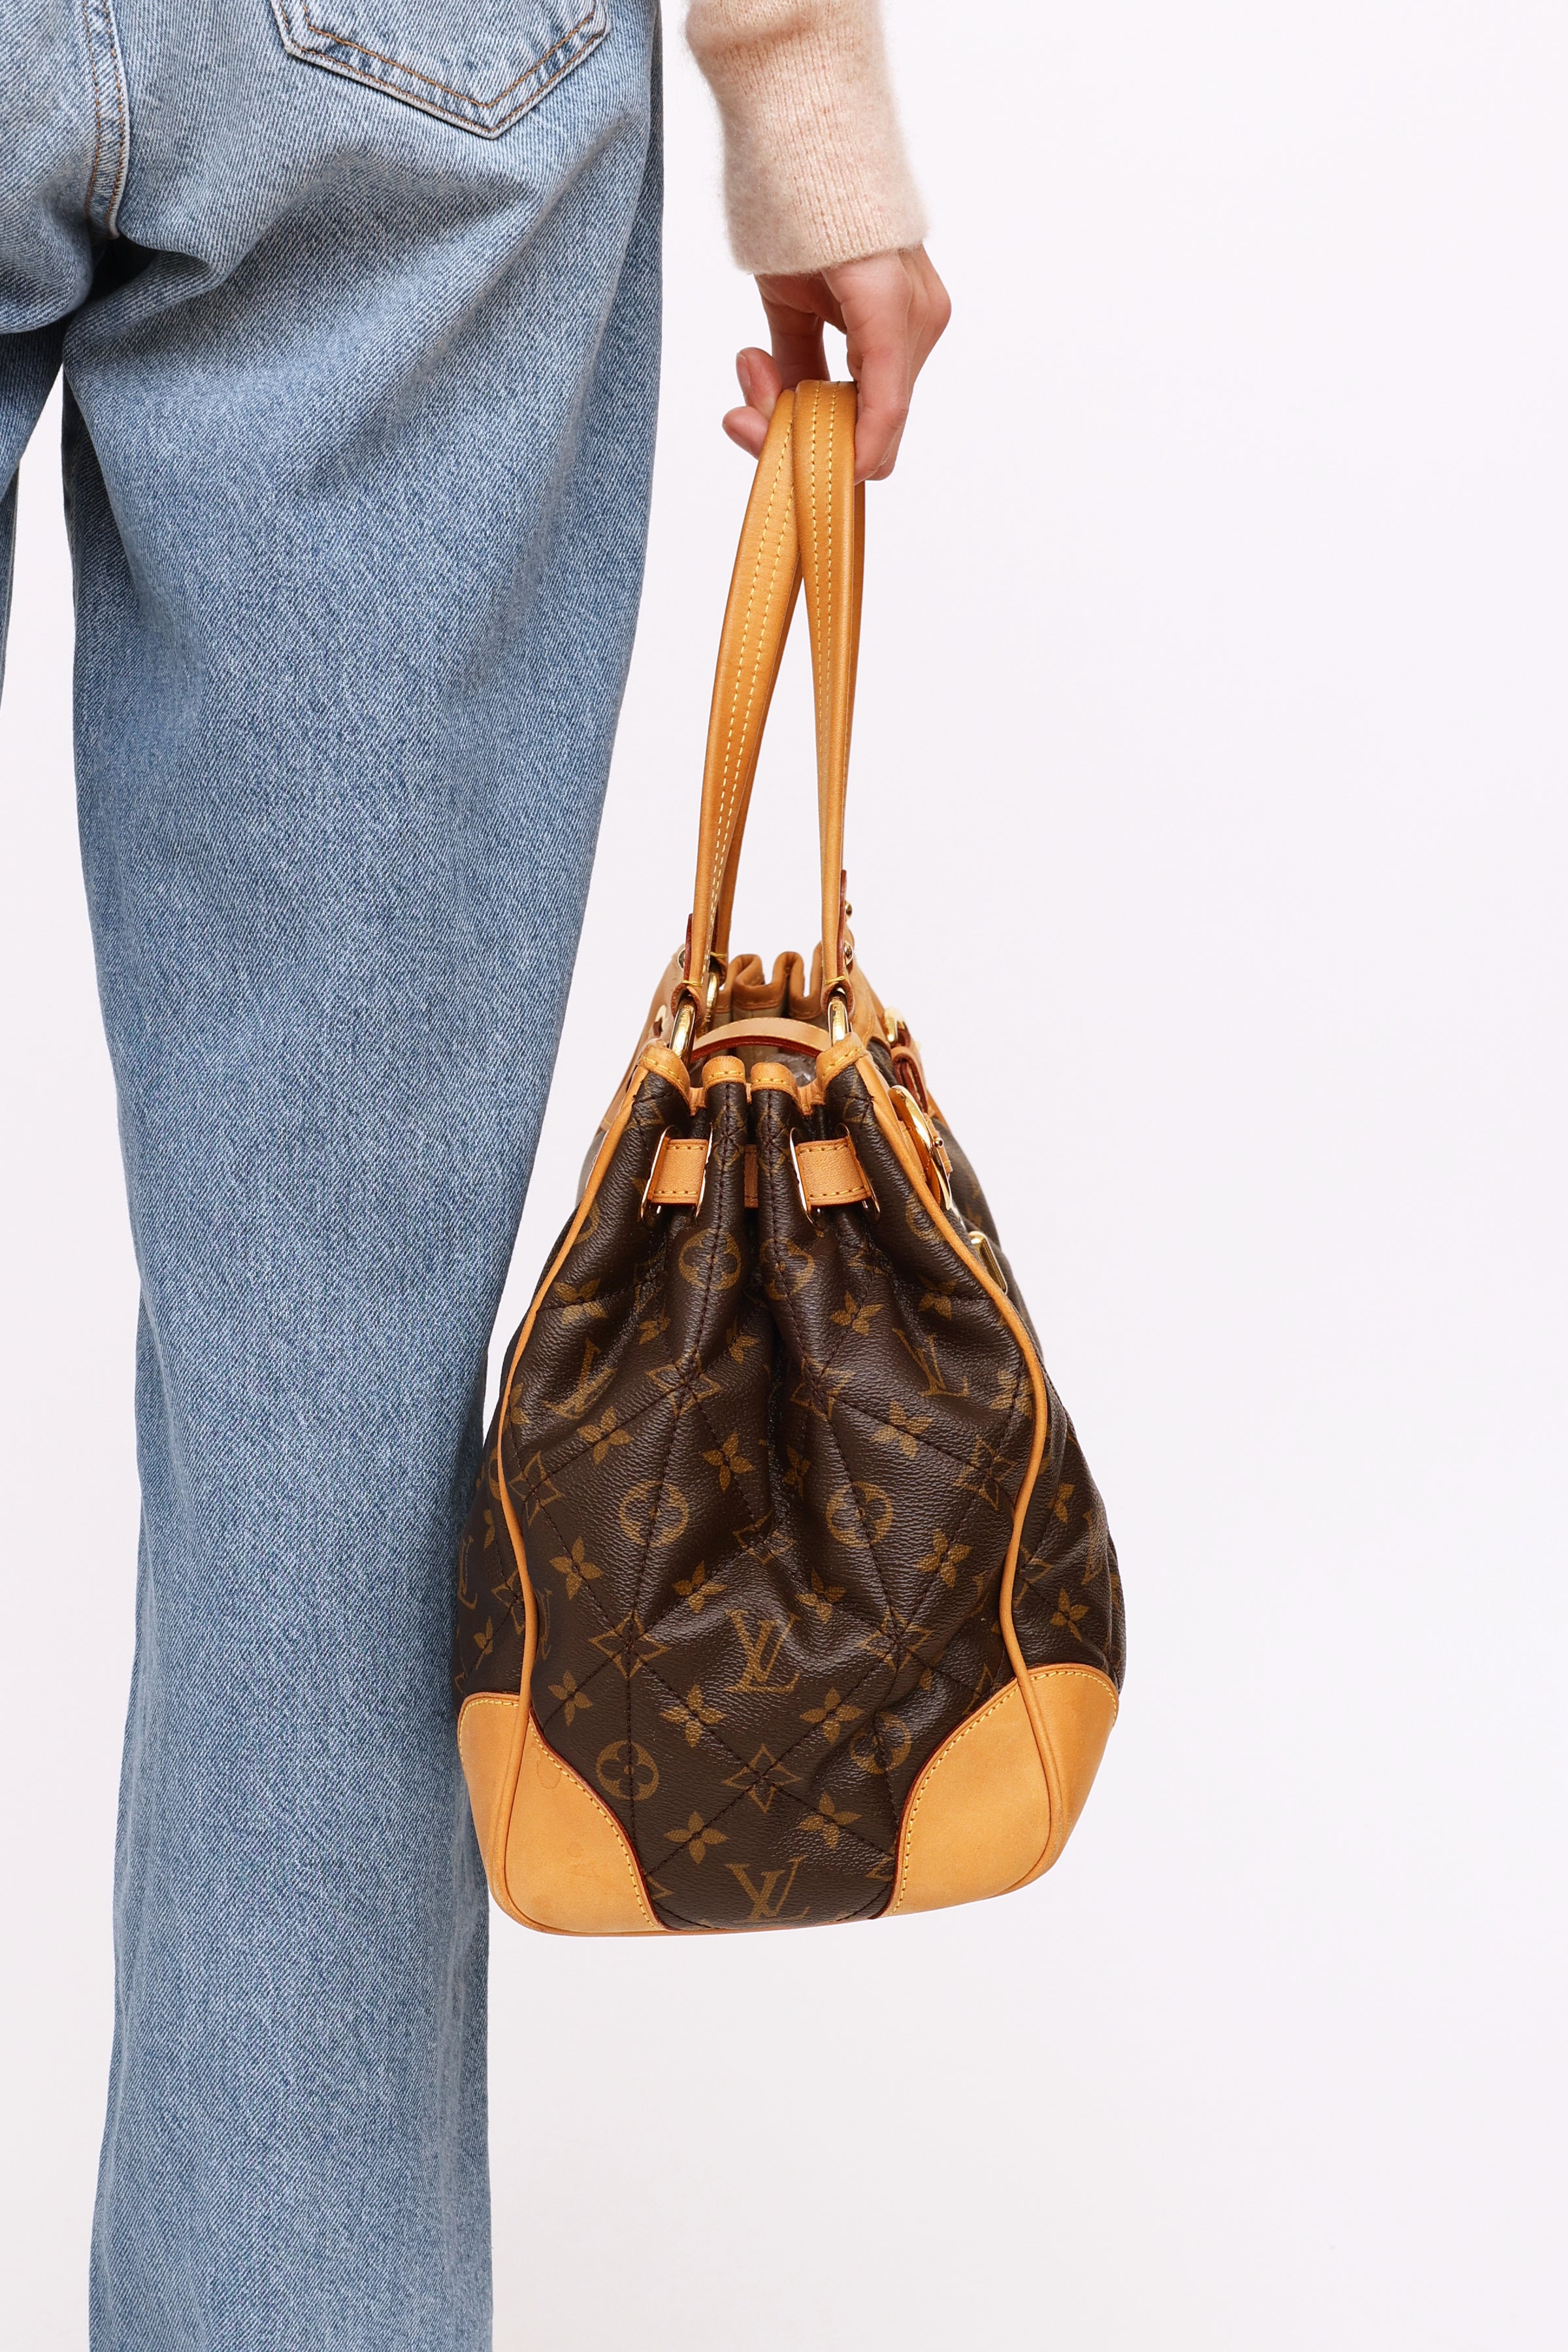 ETOILE LUXURY VINTAGE  Fashion, Louis vuitton handbags, Louis vuitton bag